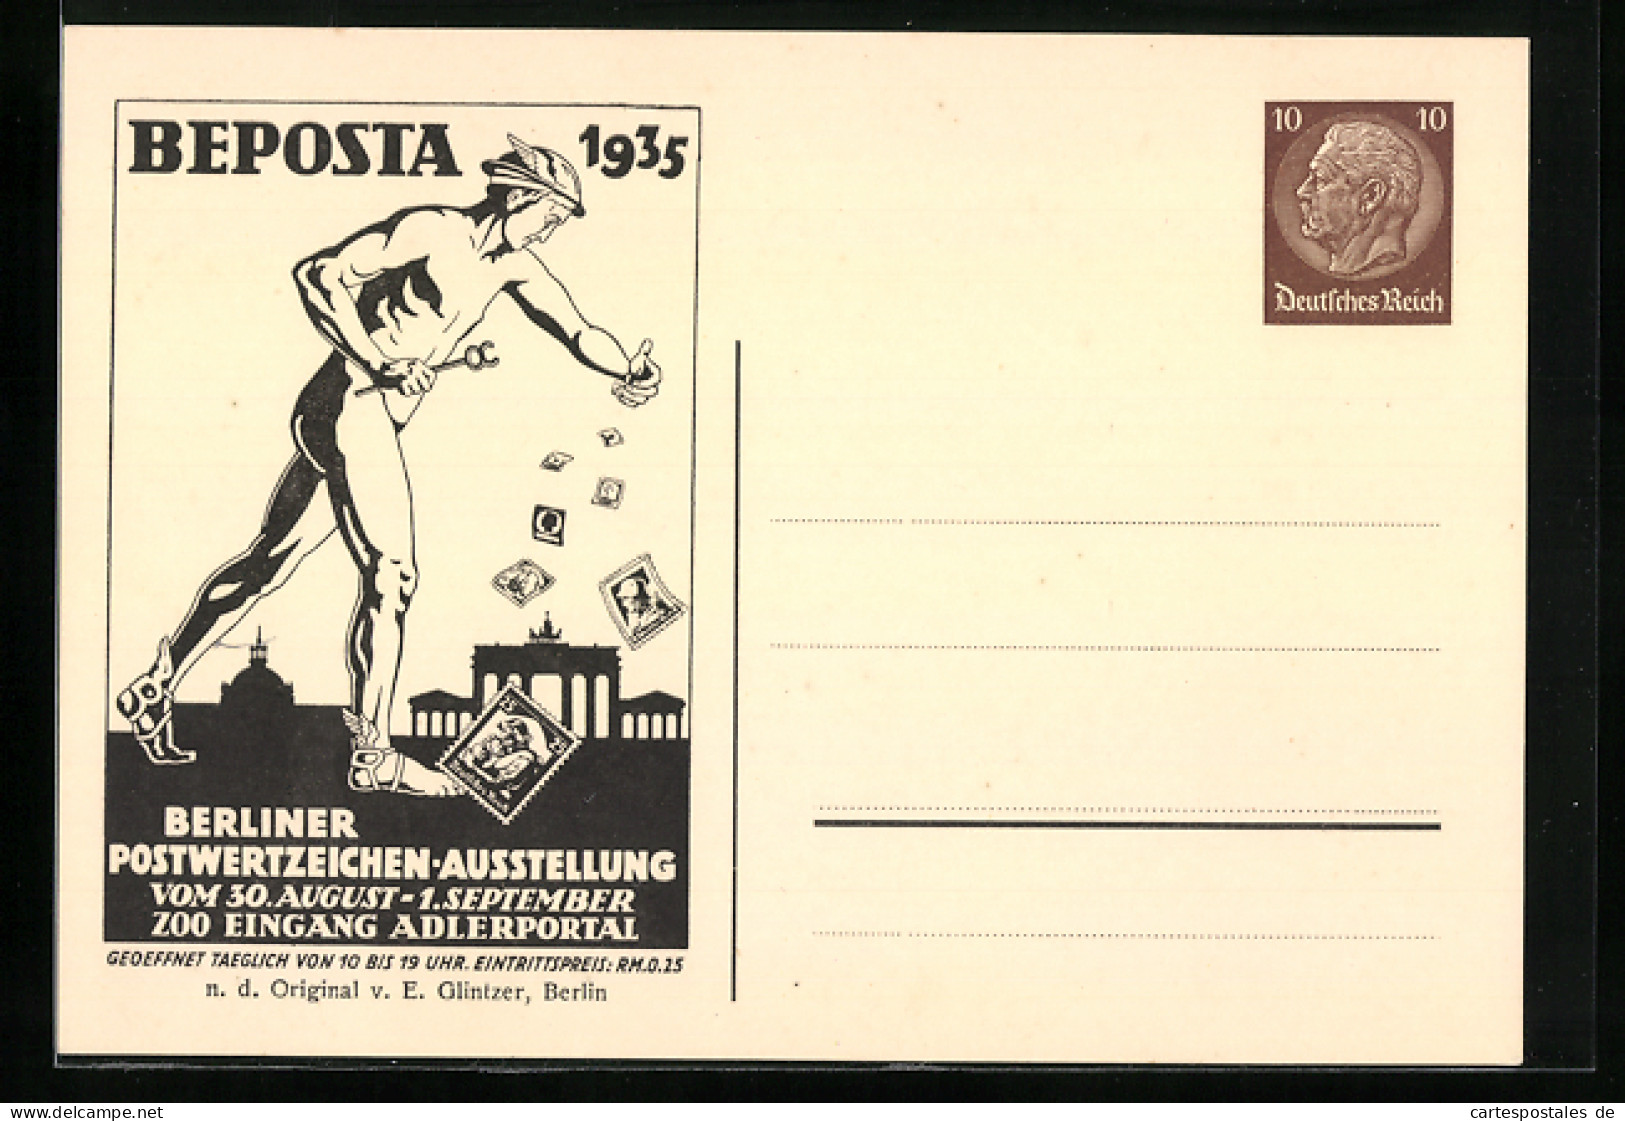 AK Berlin, Berliner Postwertzeichen-Ausstellung Beposta 1935, Ganzsache 10 Pfg.  - Briefkaarten